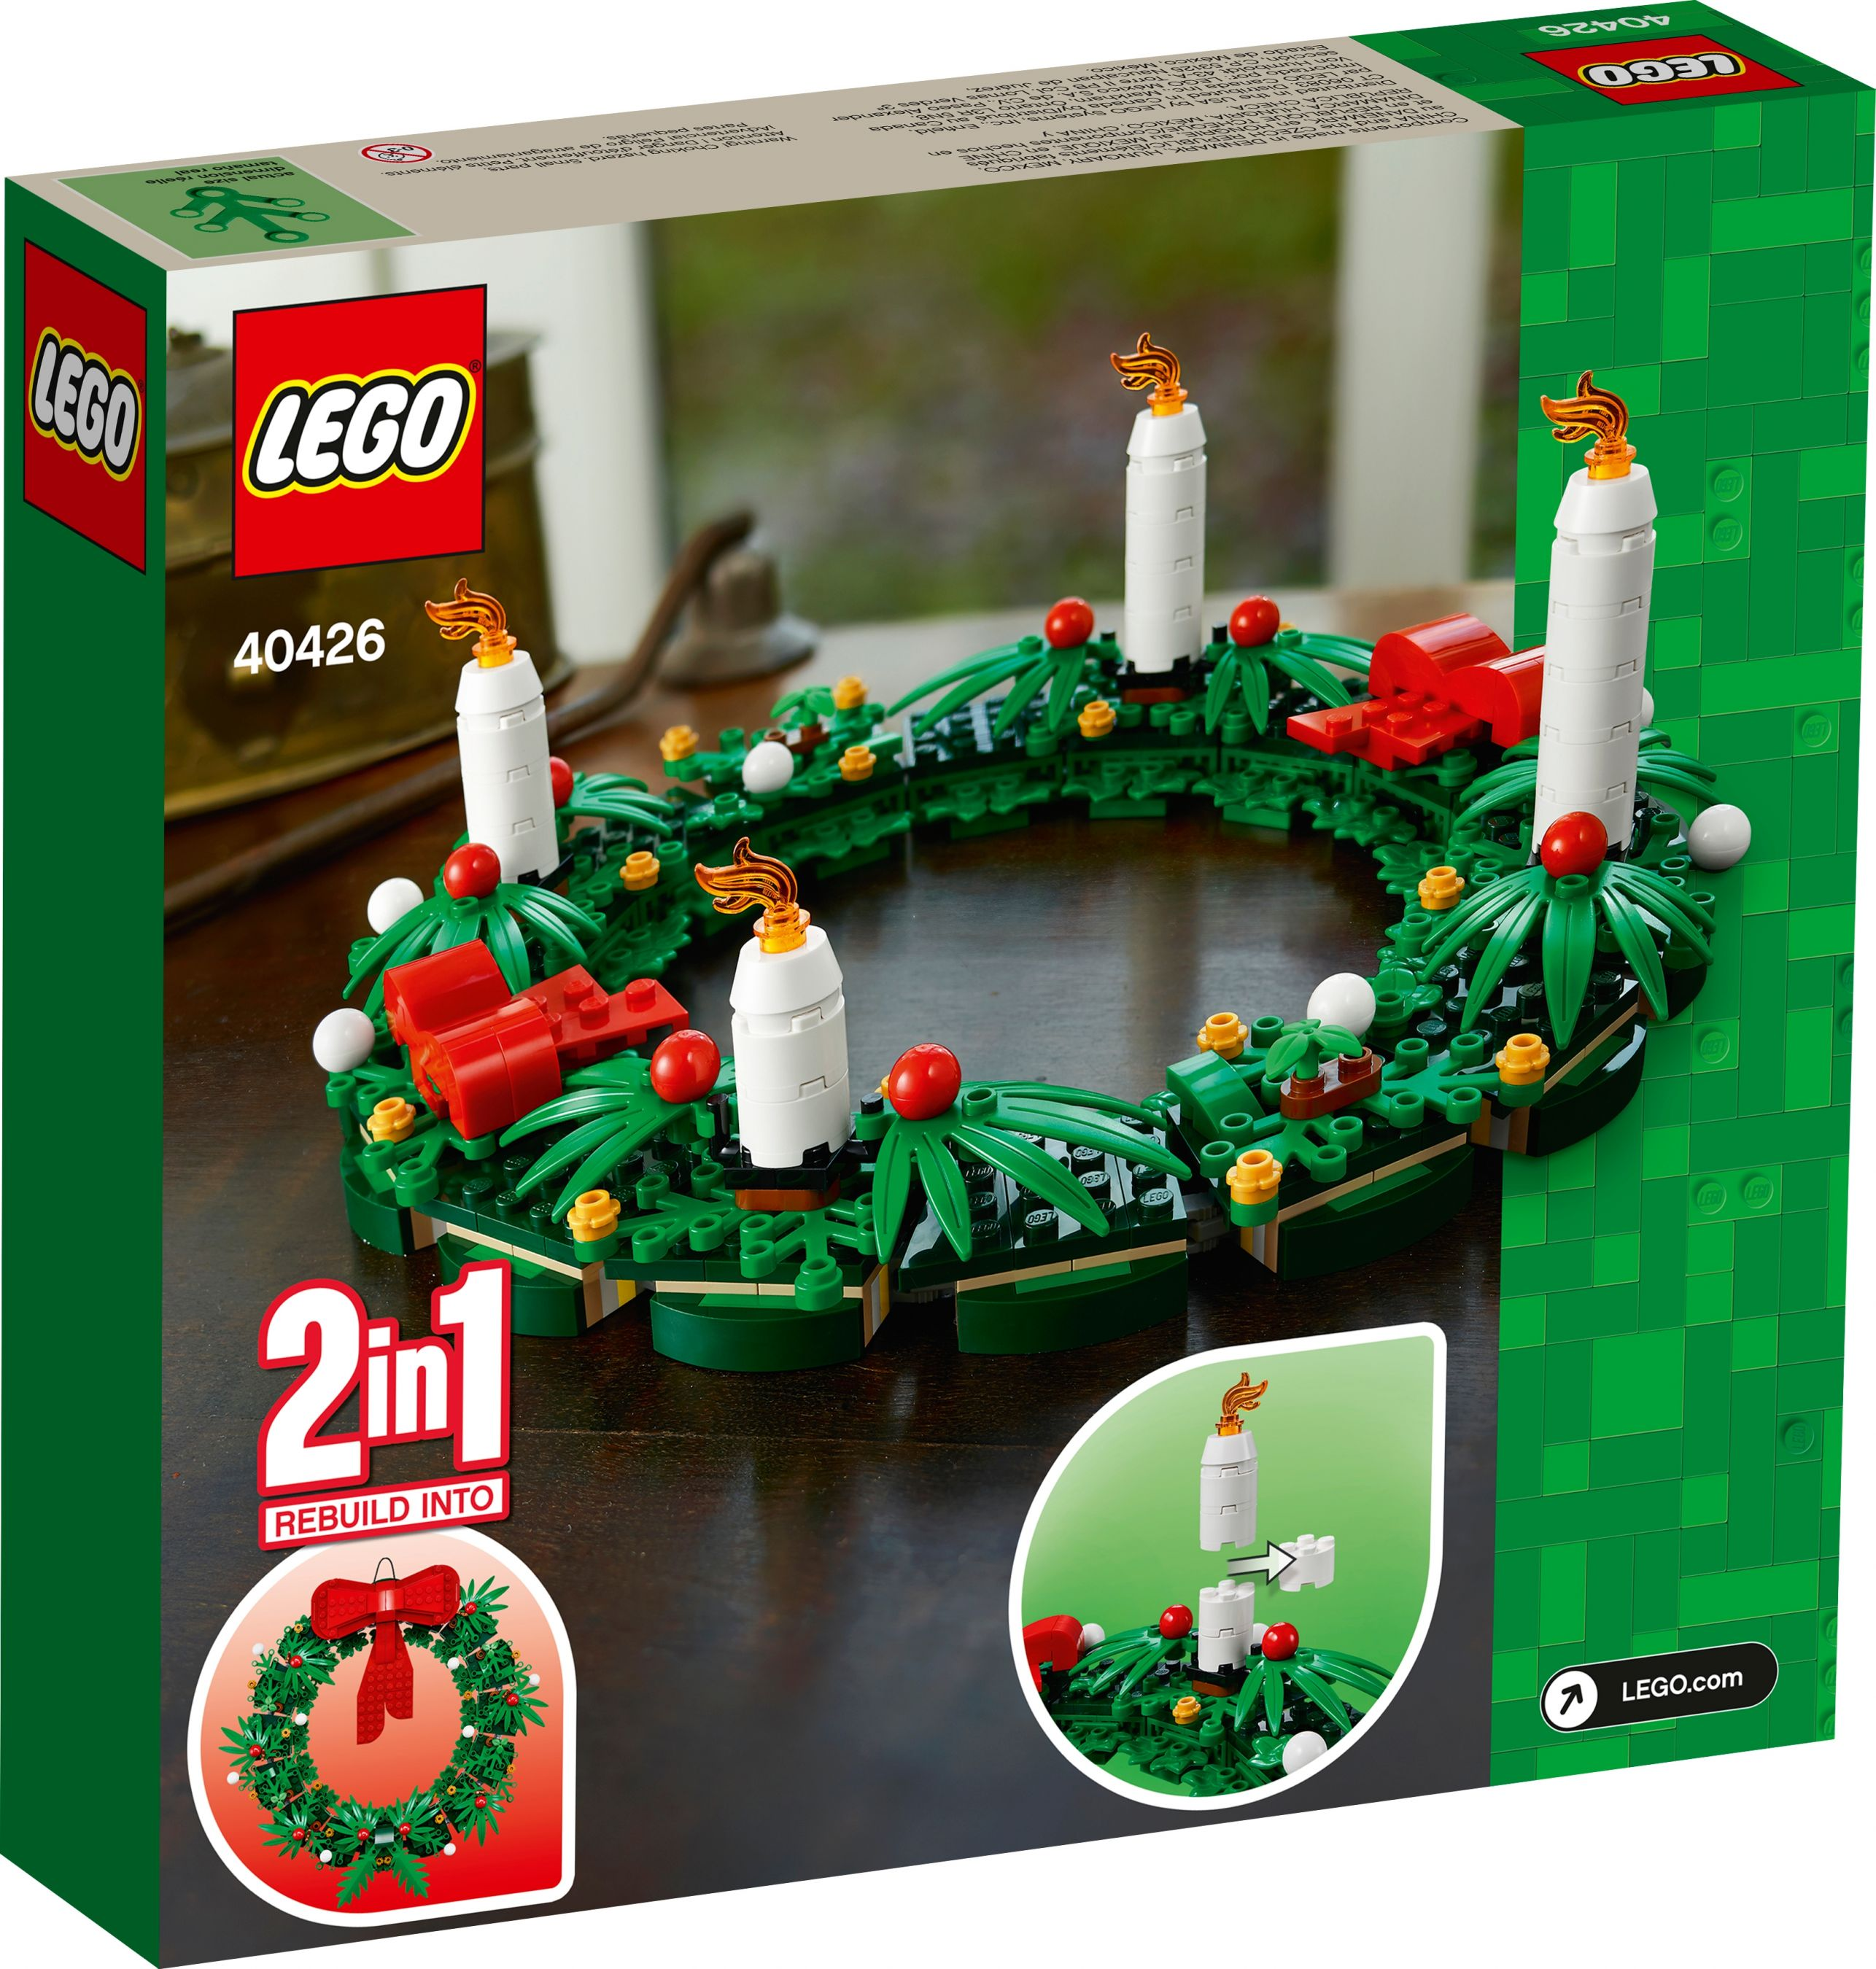 LEGO 40426 Adventskranz 2in1 Bausatz Türkranz 